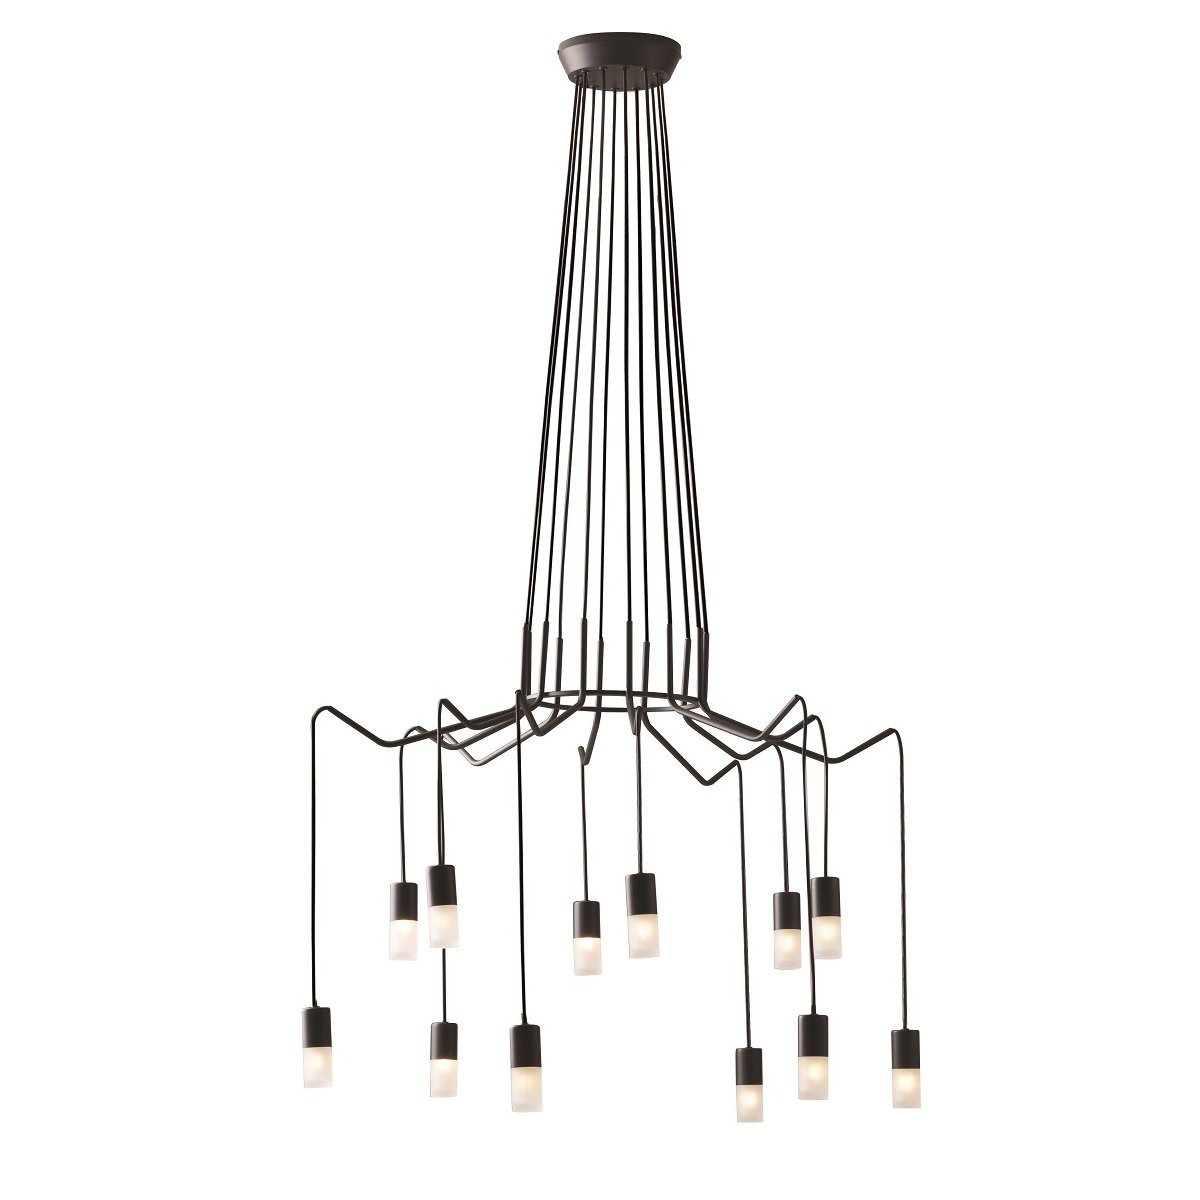 & kaufen ECO --> S12 Spider 12-flammig im Design Lampen Luce online Leuchten Shop Light Pendelleuchte